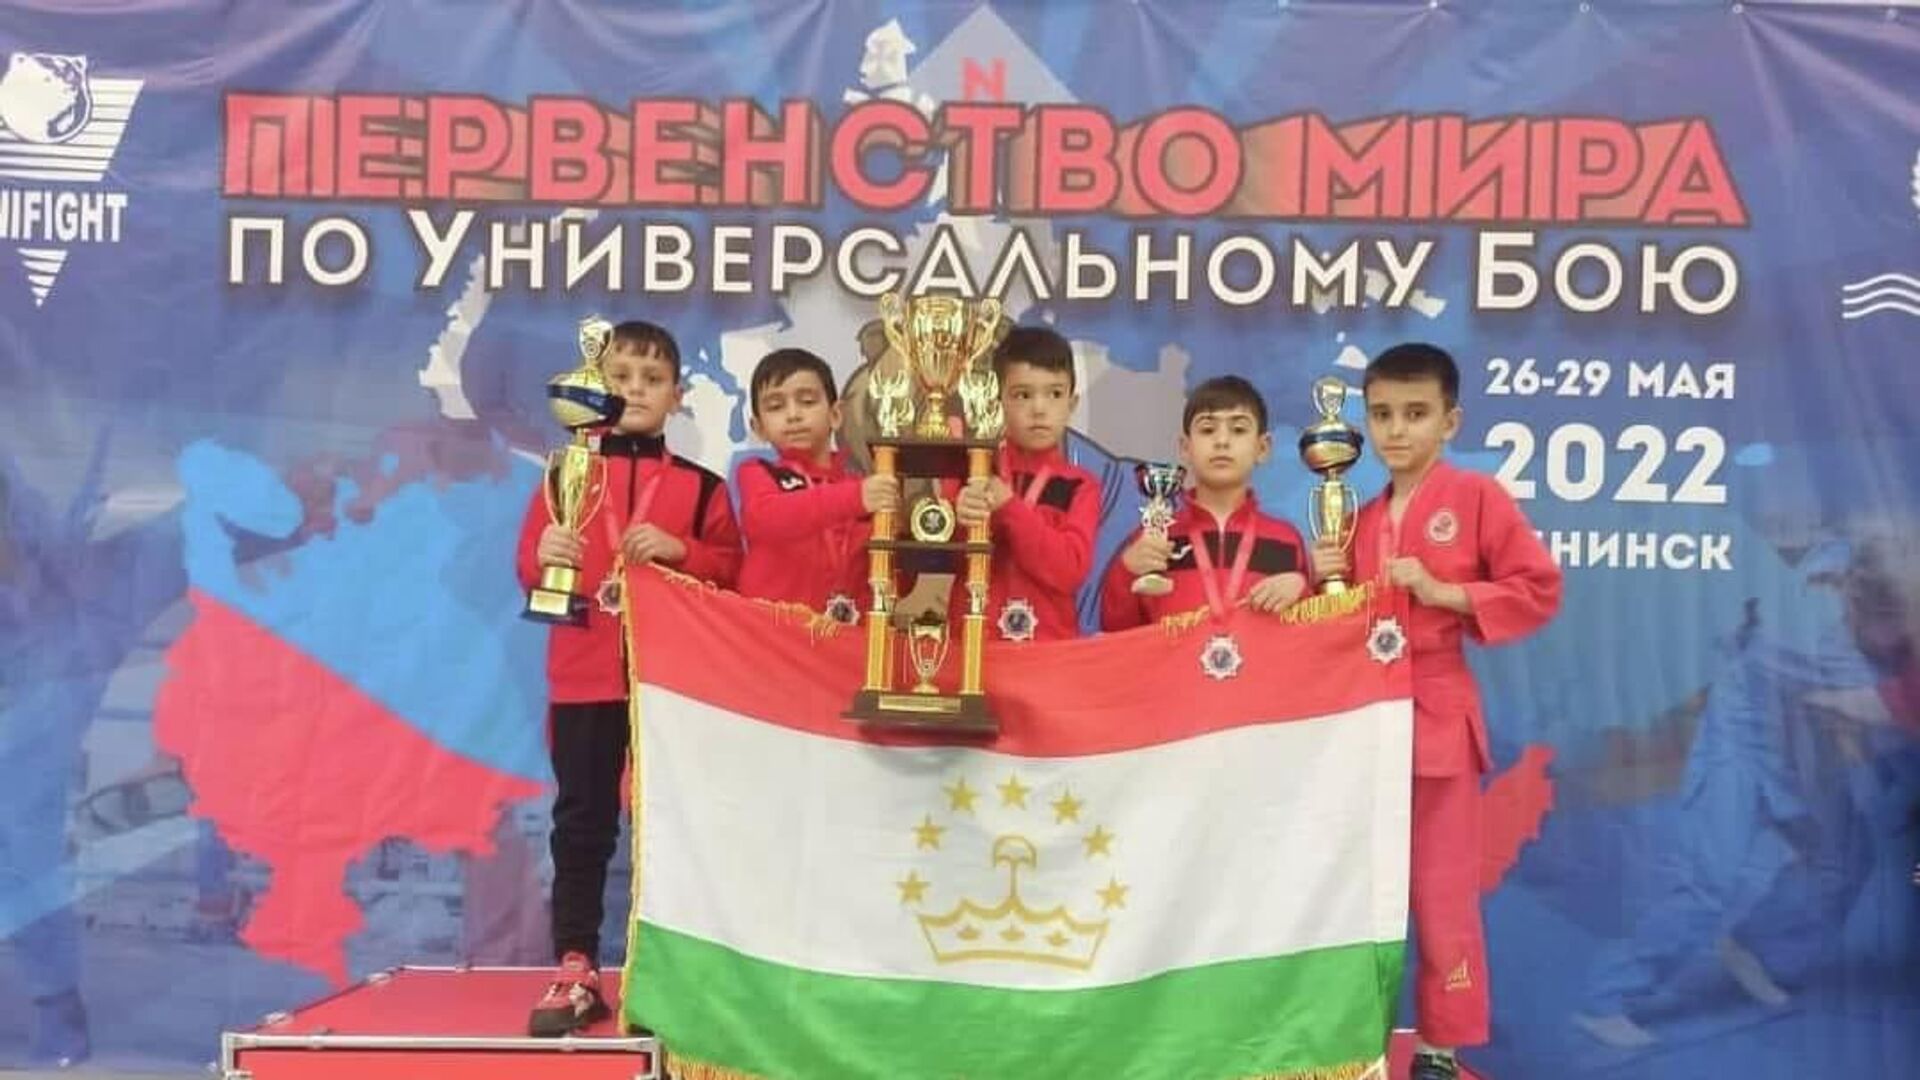  Юные бойцы из Таджикистана выиграли шесть медалей на первенстве мира по универсальному бою - Sputnik Таджикистан, 1920, 30.05.2022